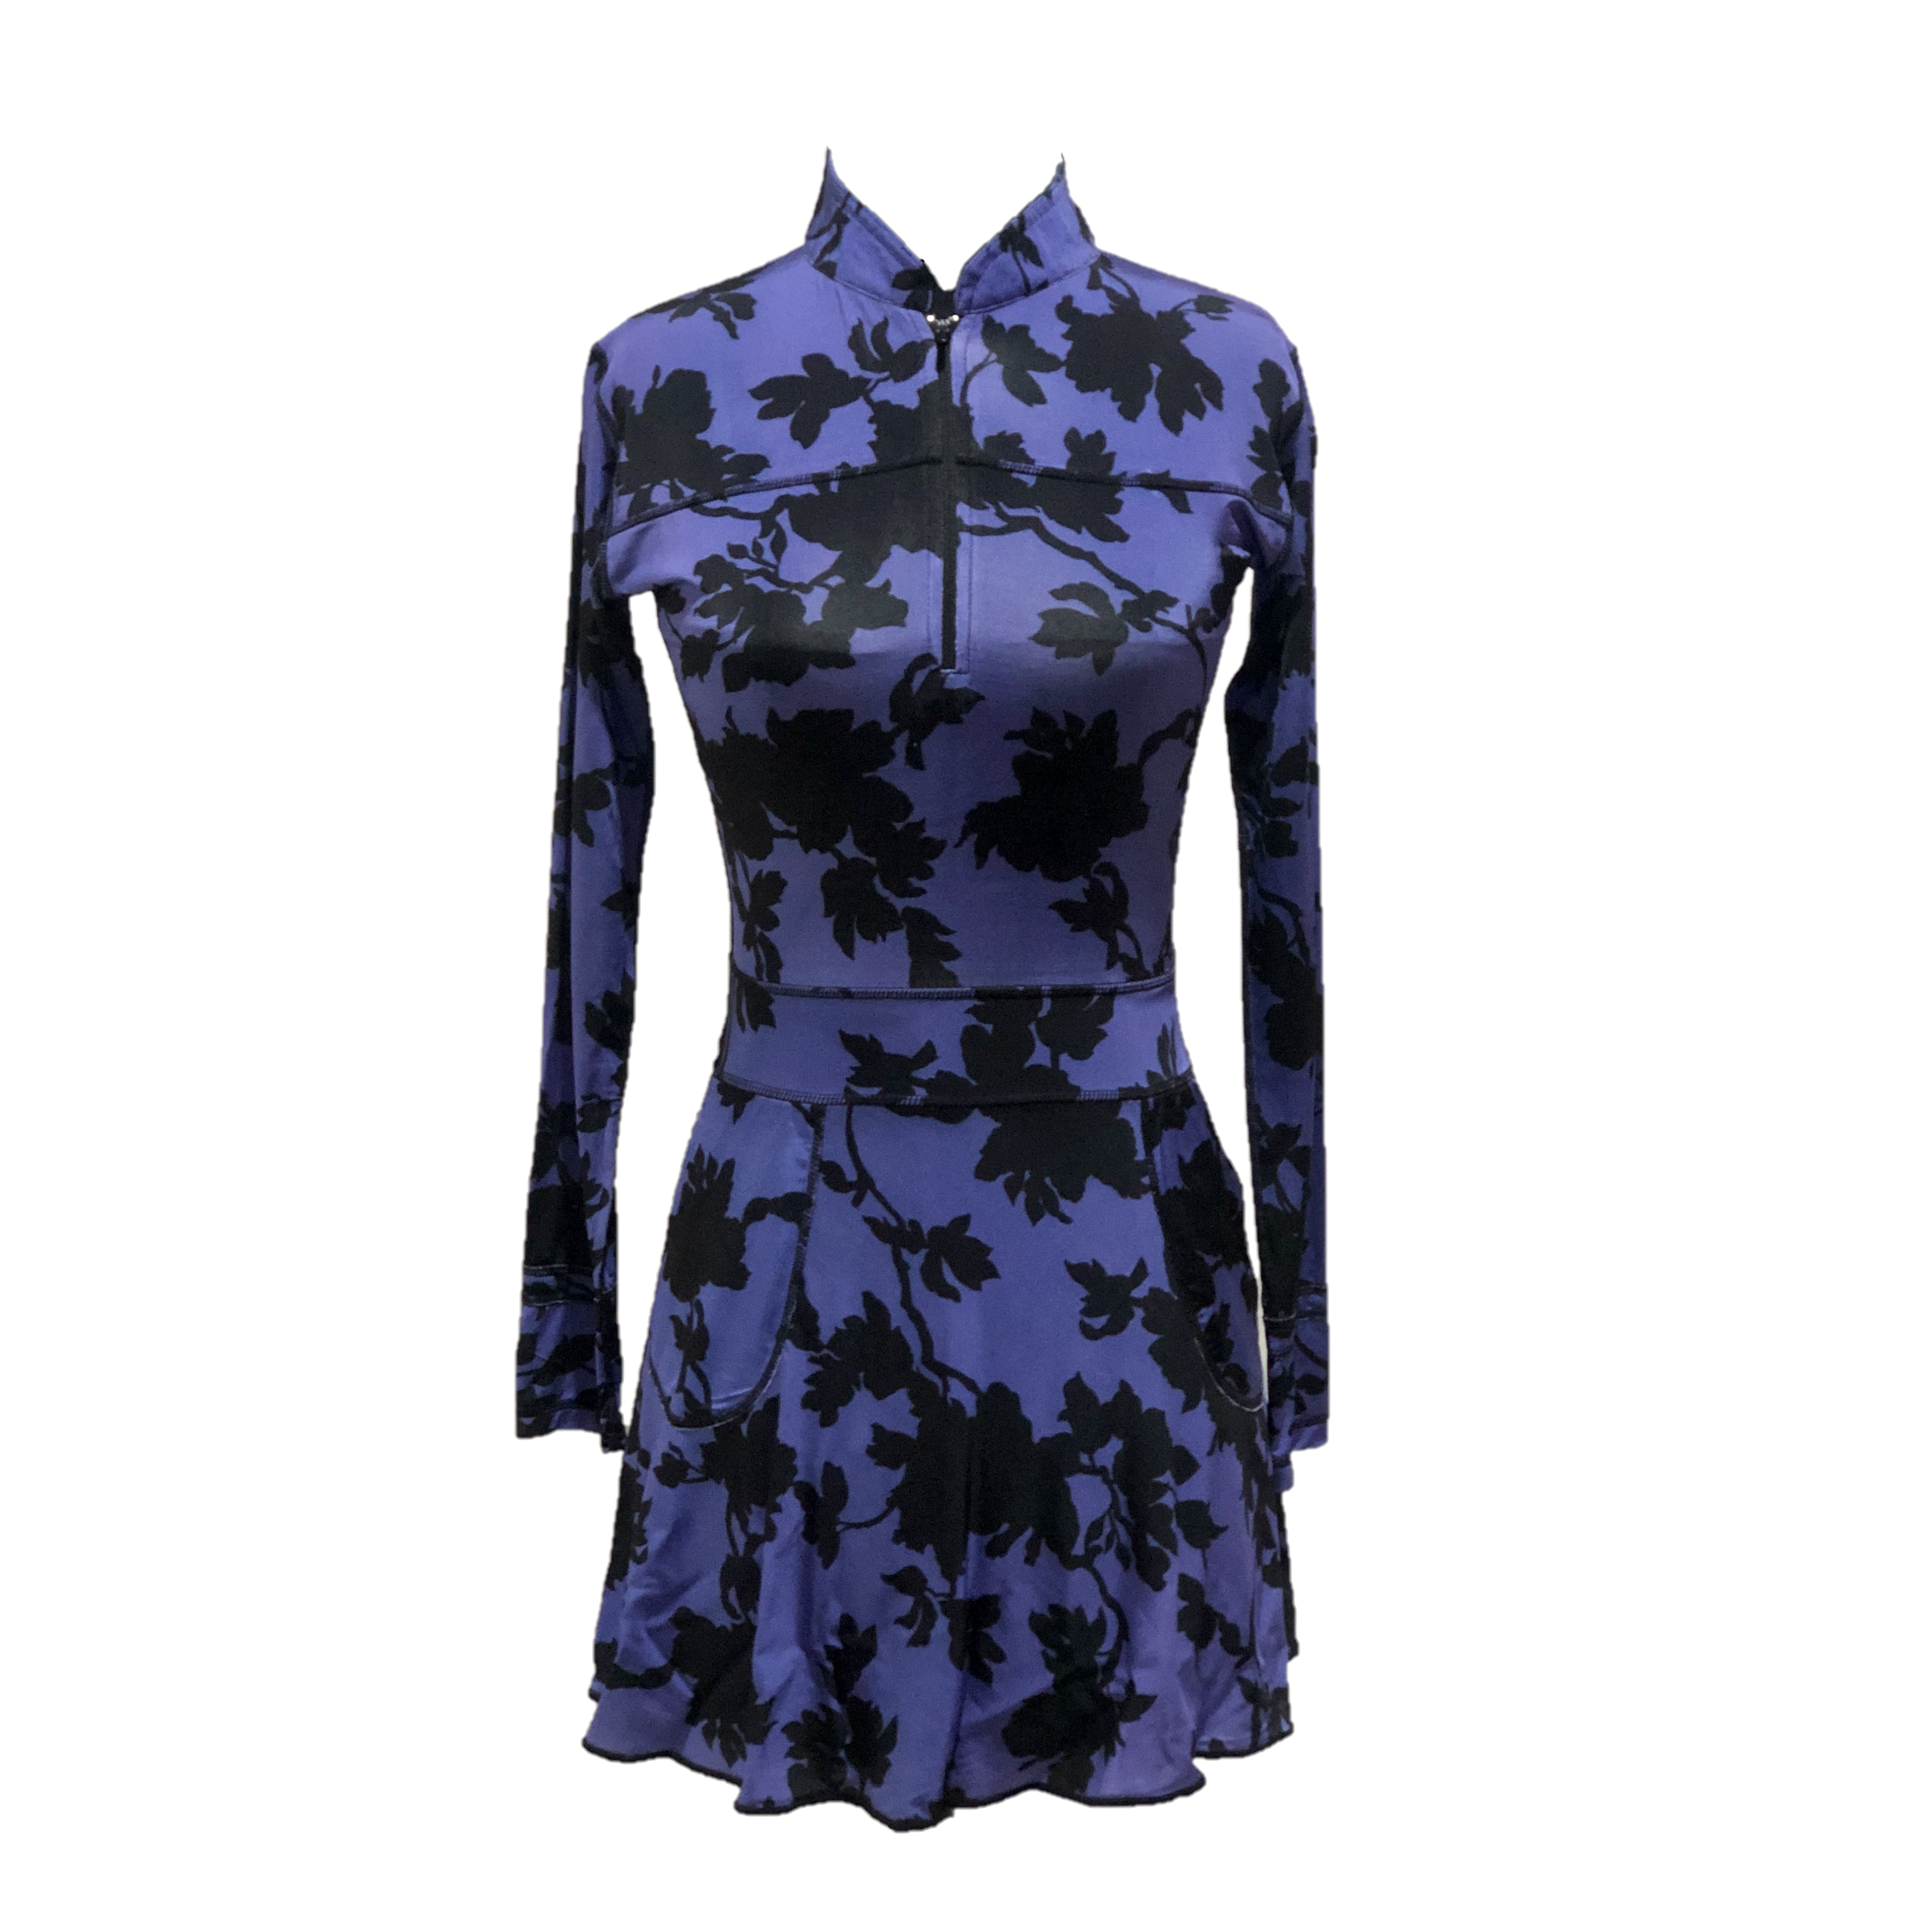 GD-015A || Golf Dress Mauve with Black Leaf Motif Zip Fastened V Neck  and 2 Side Pockets